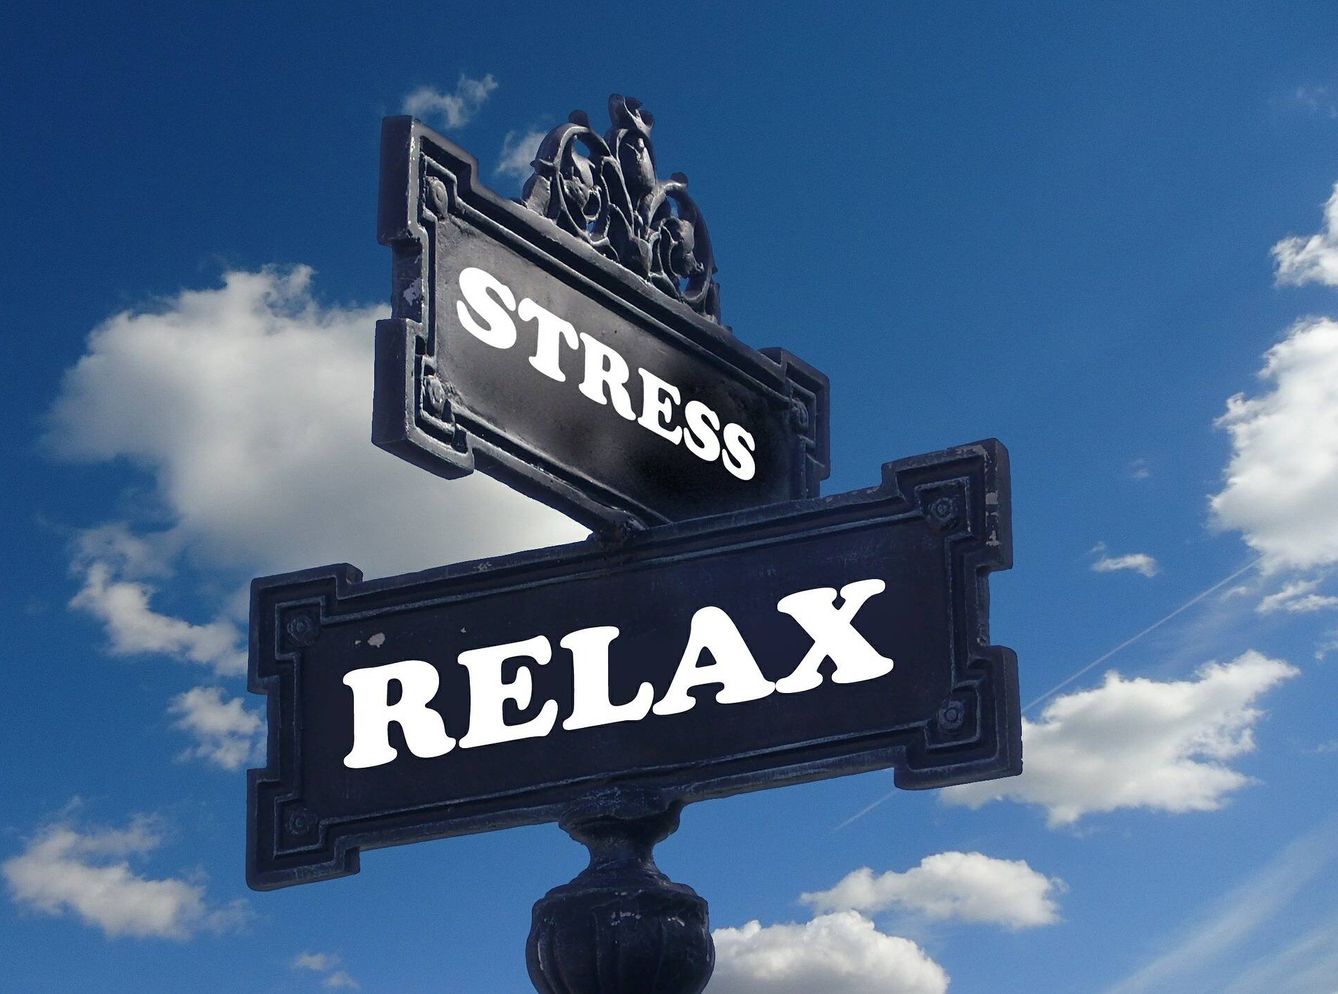 Uno de los beneficios más sorprendentes del estrés es que puede ayudar a construir relaciones interpersonales, que son clave para la salud en general. (Pixabay)